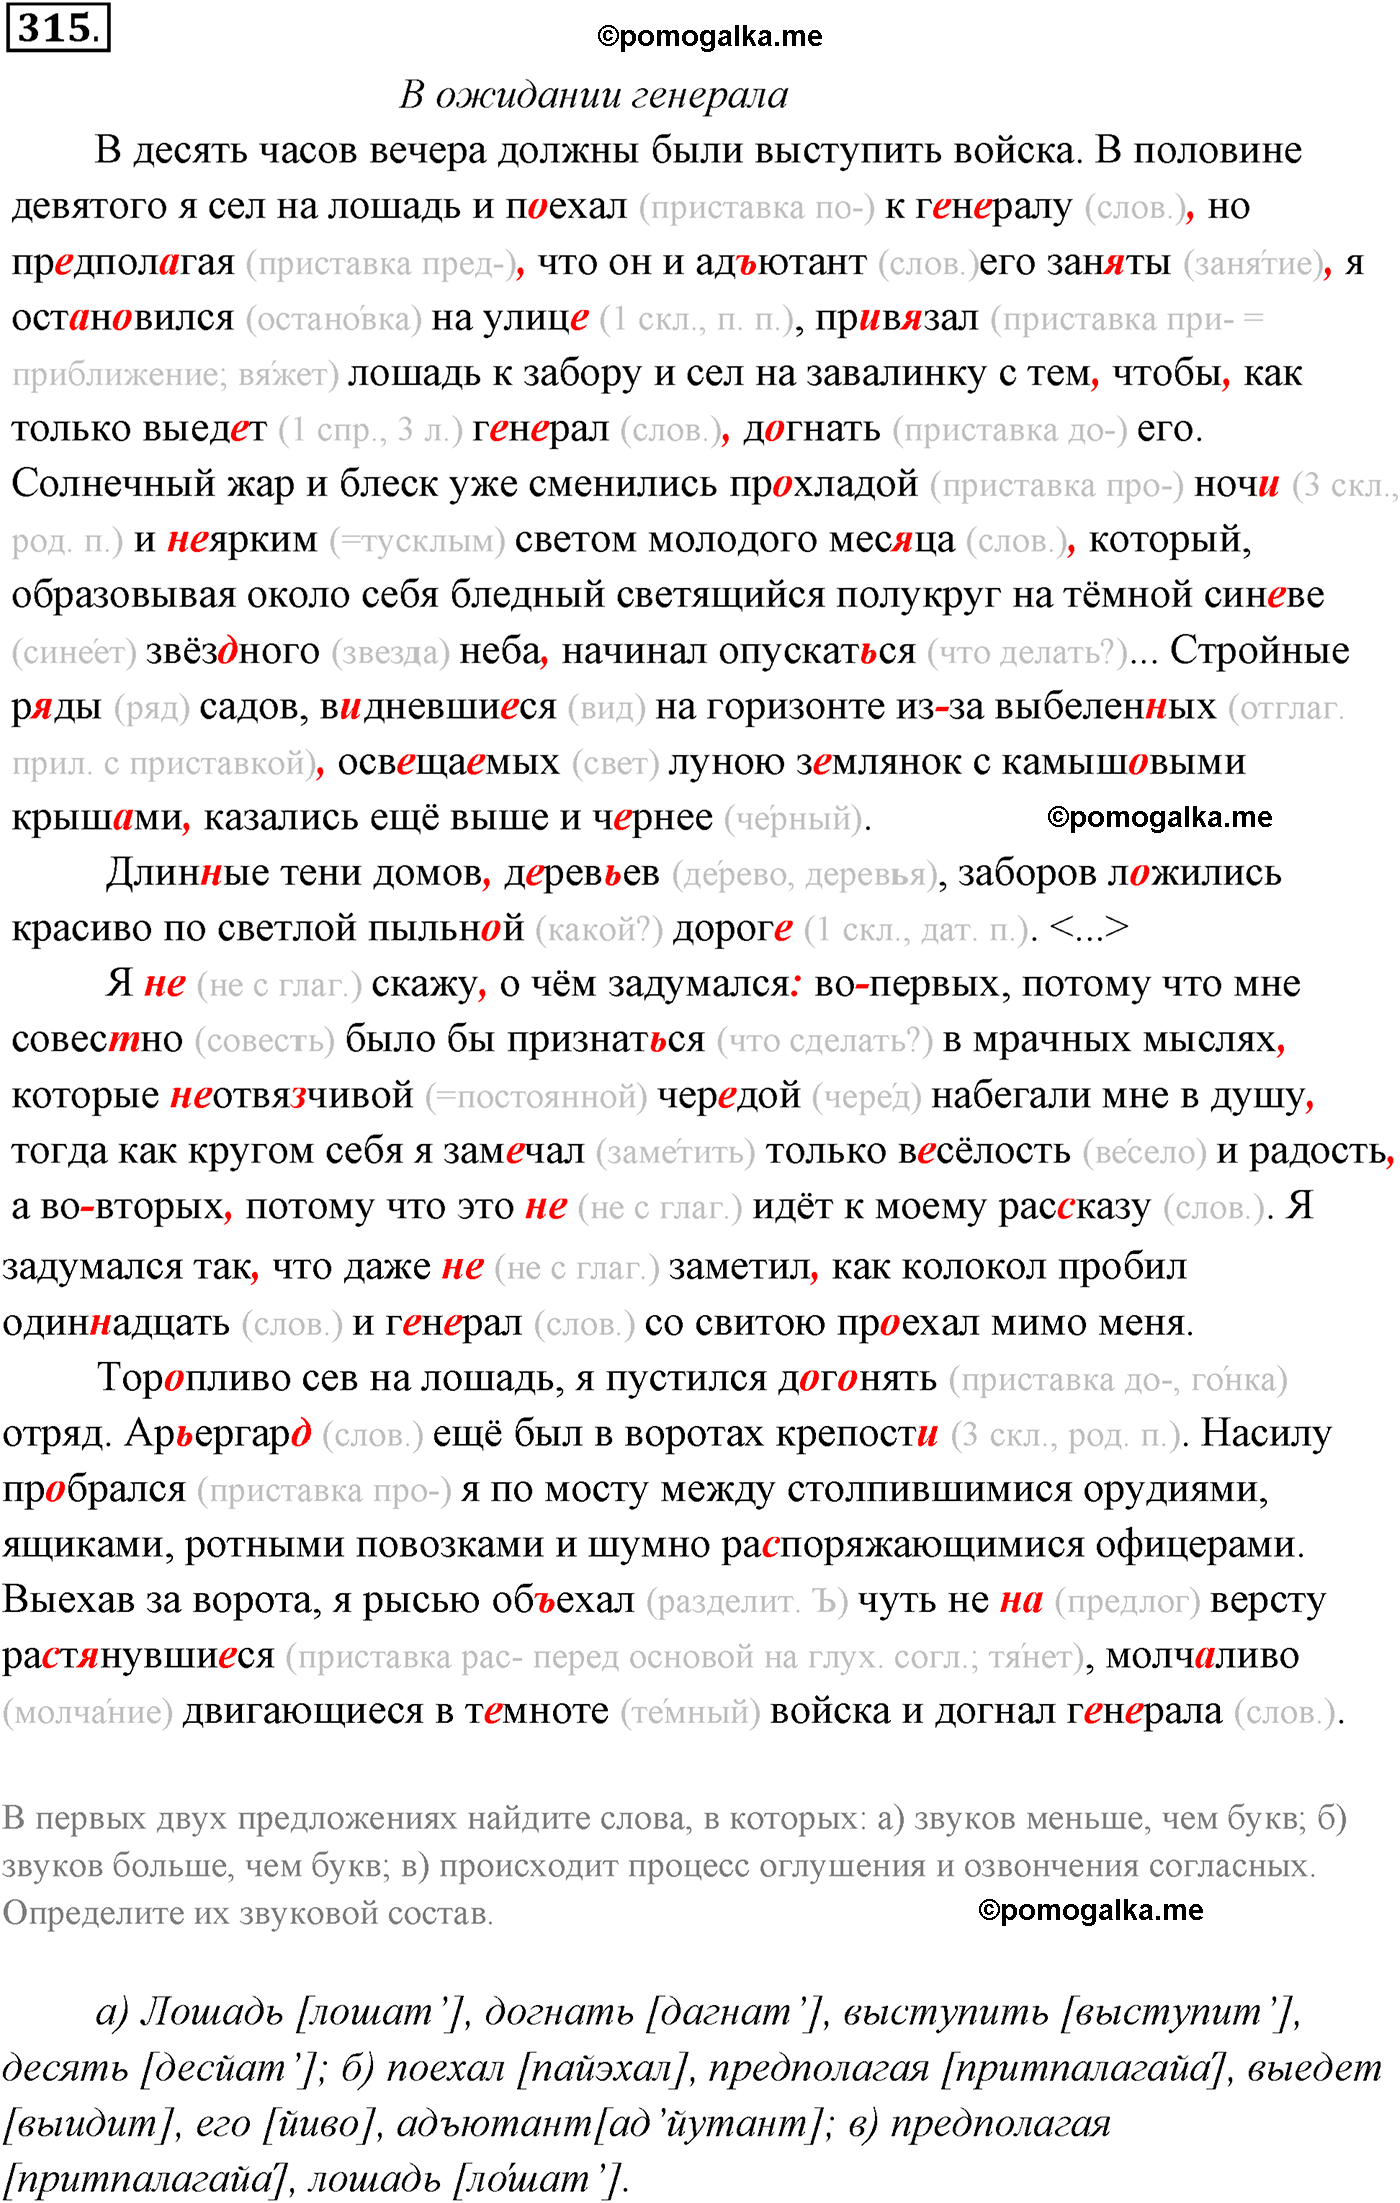 упражнение №315 русский язык 10-11 класс Власенков